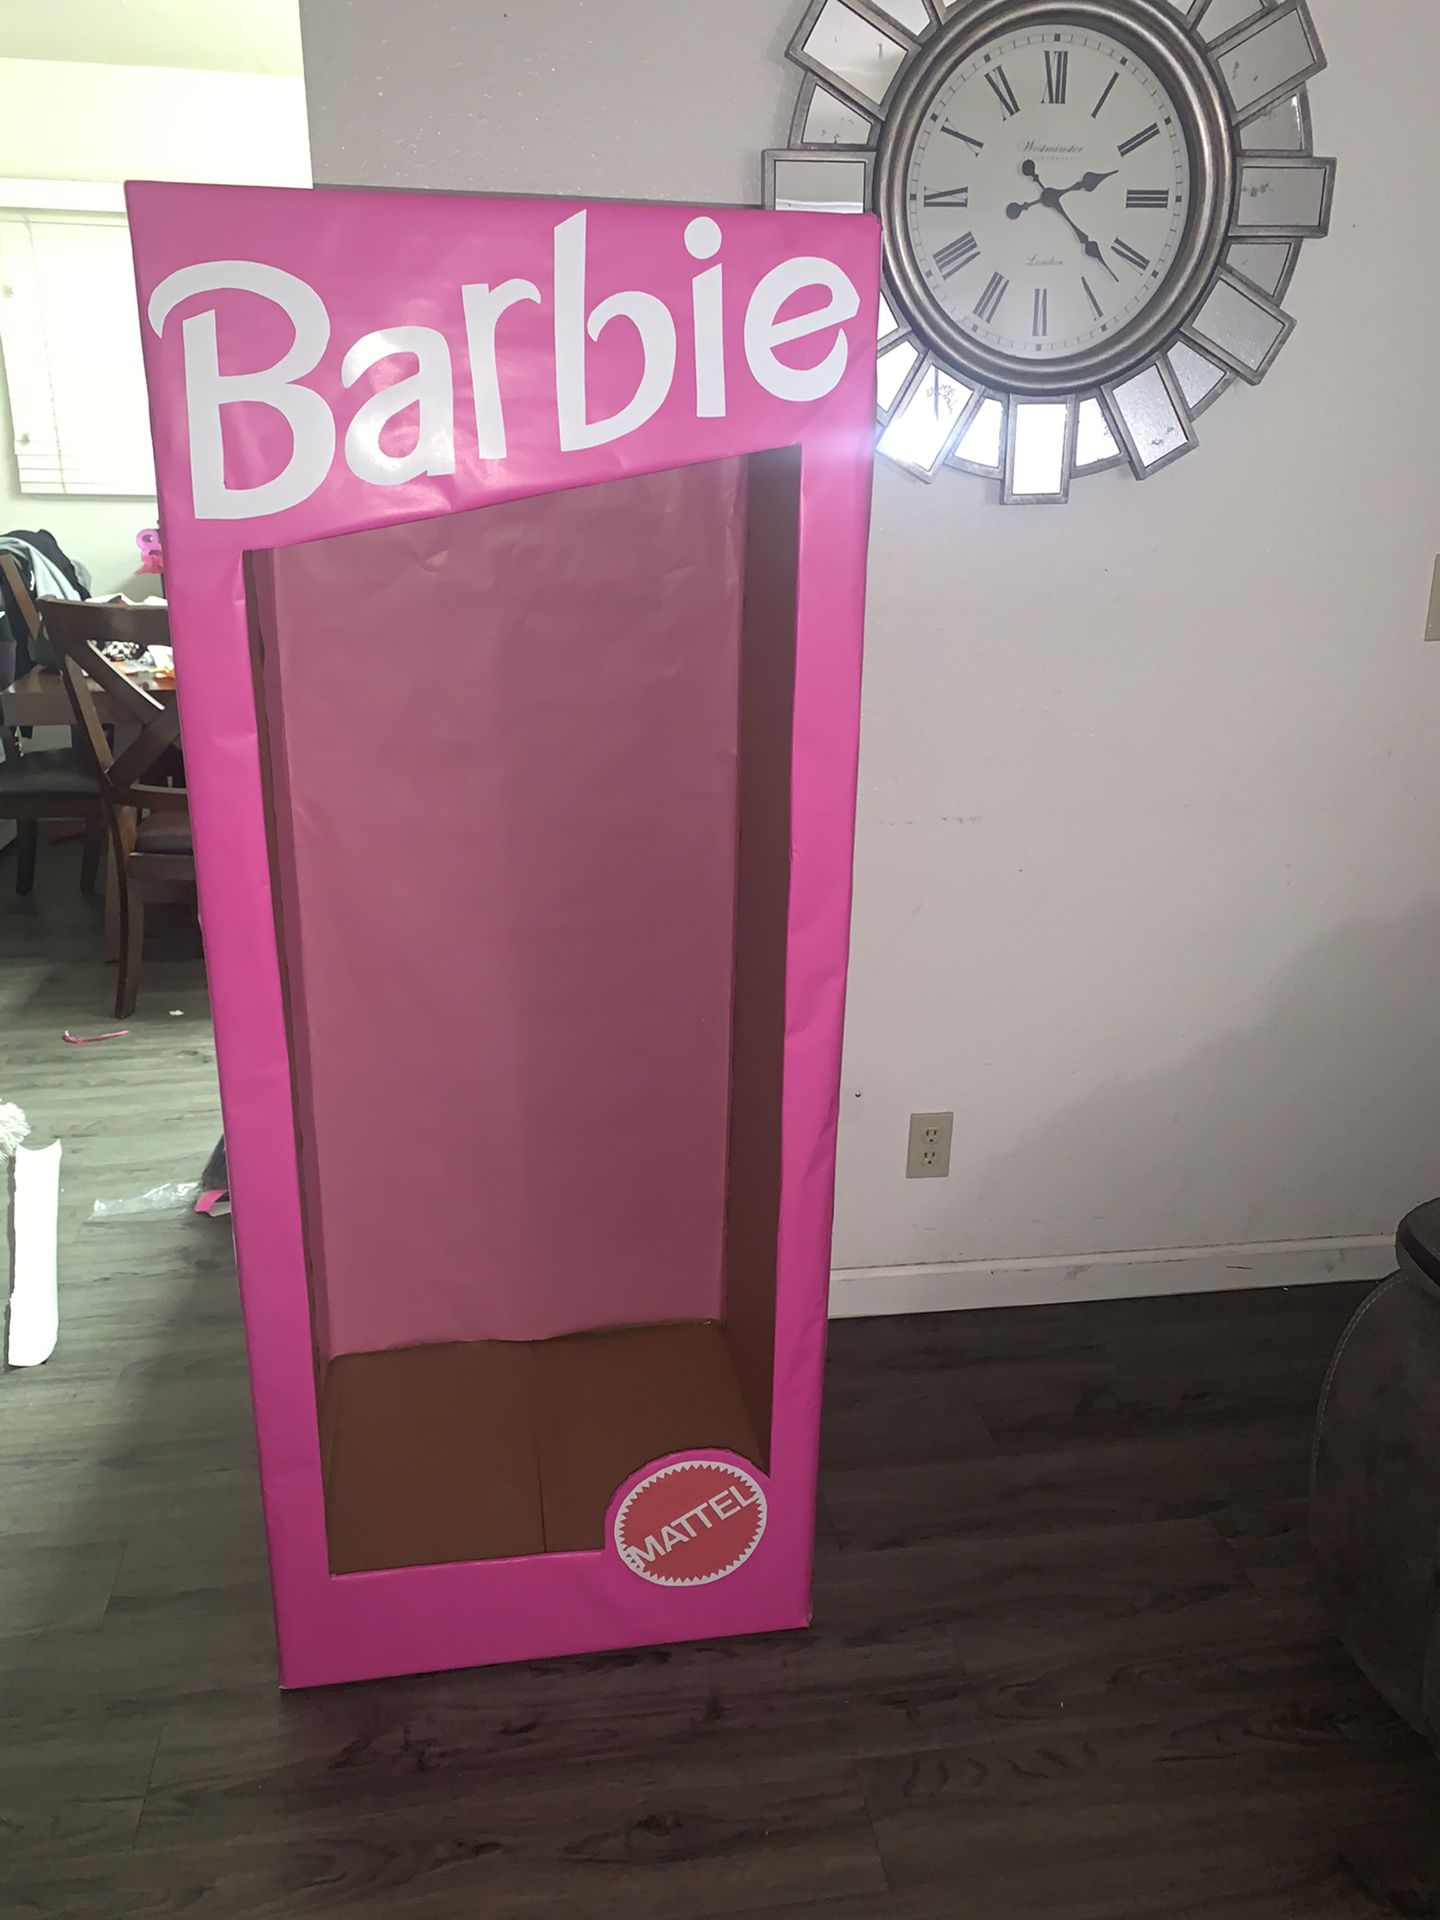 Party Barbie box